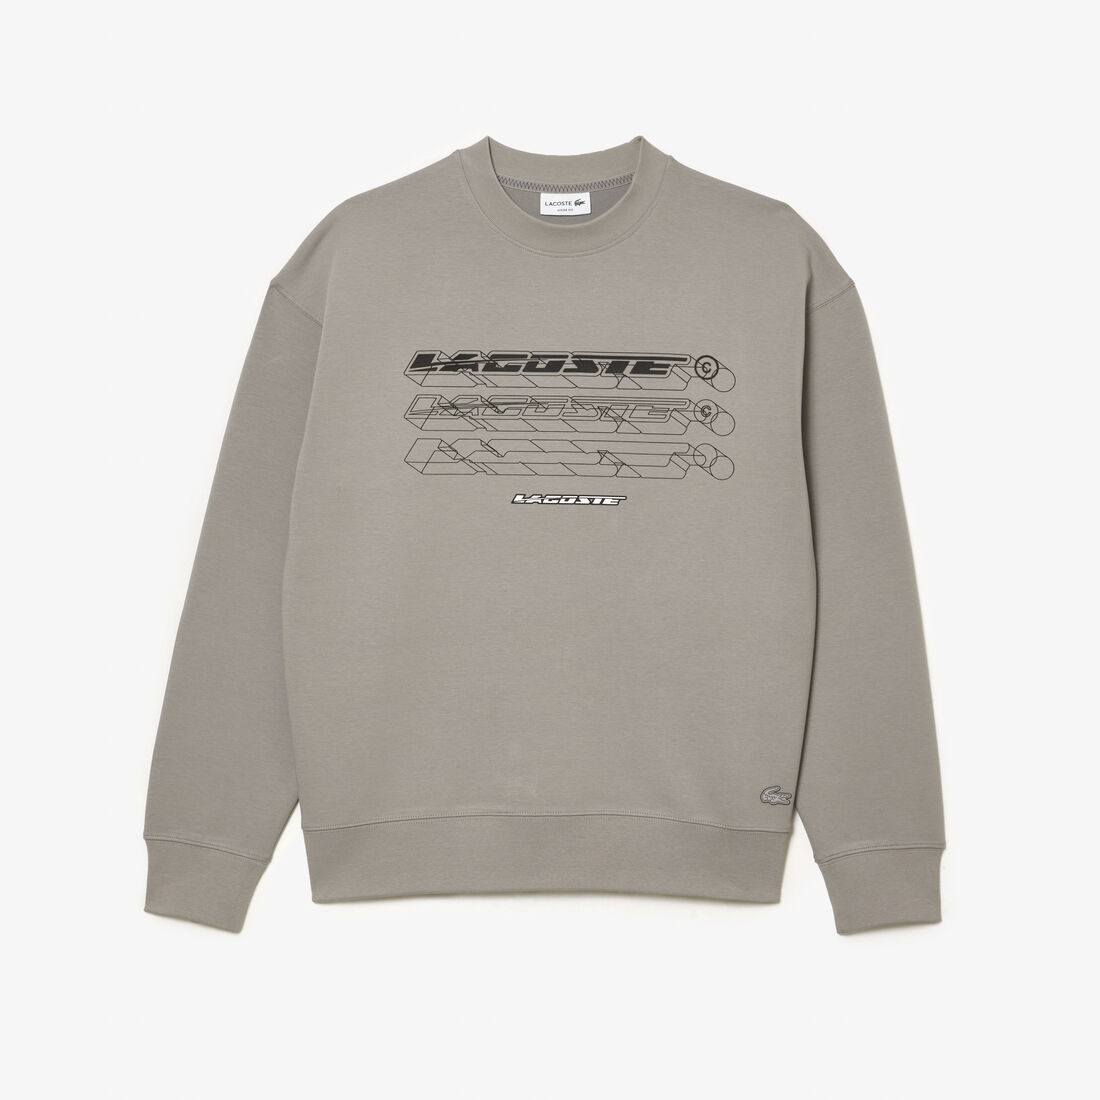 Lacoste Loose Fit Branded Sweatshirts Herren Grau | HZKP-94567